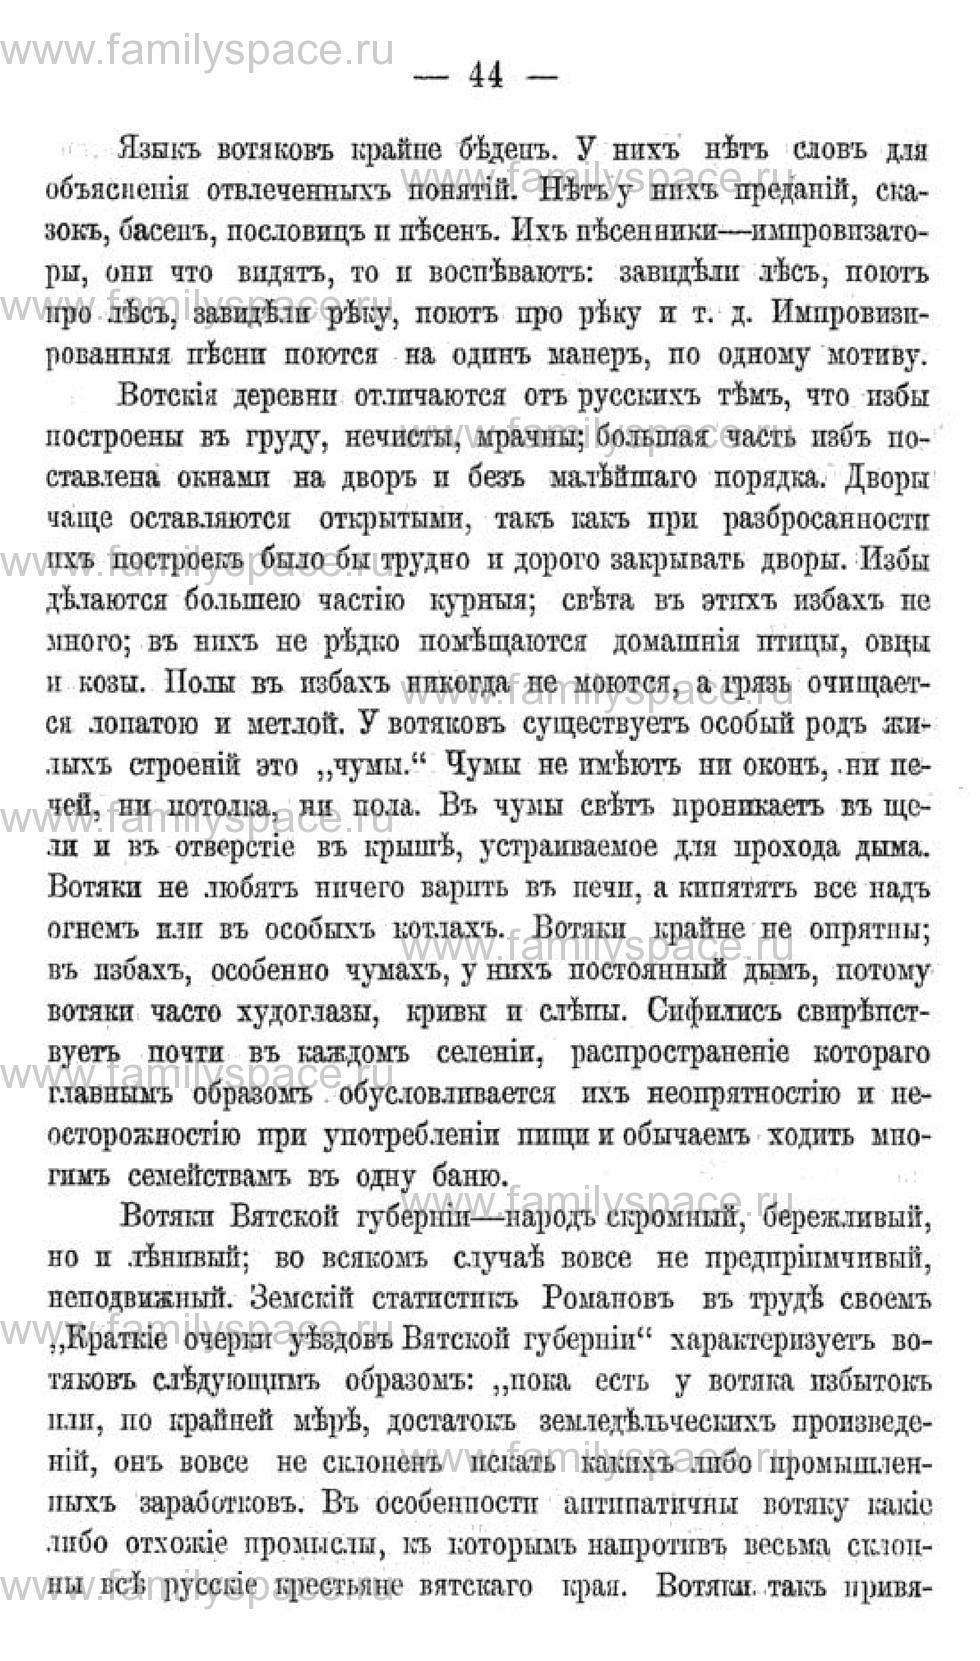 Поиск по фамилии - Календарь Вятской губернии - 1880, страница 2044